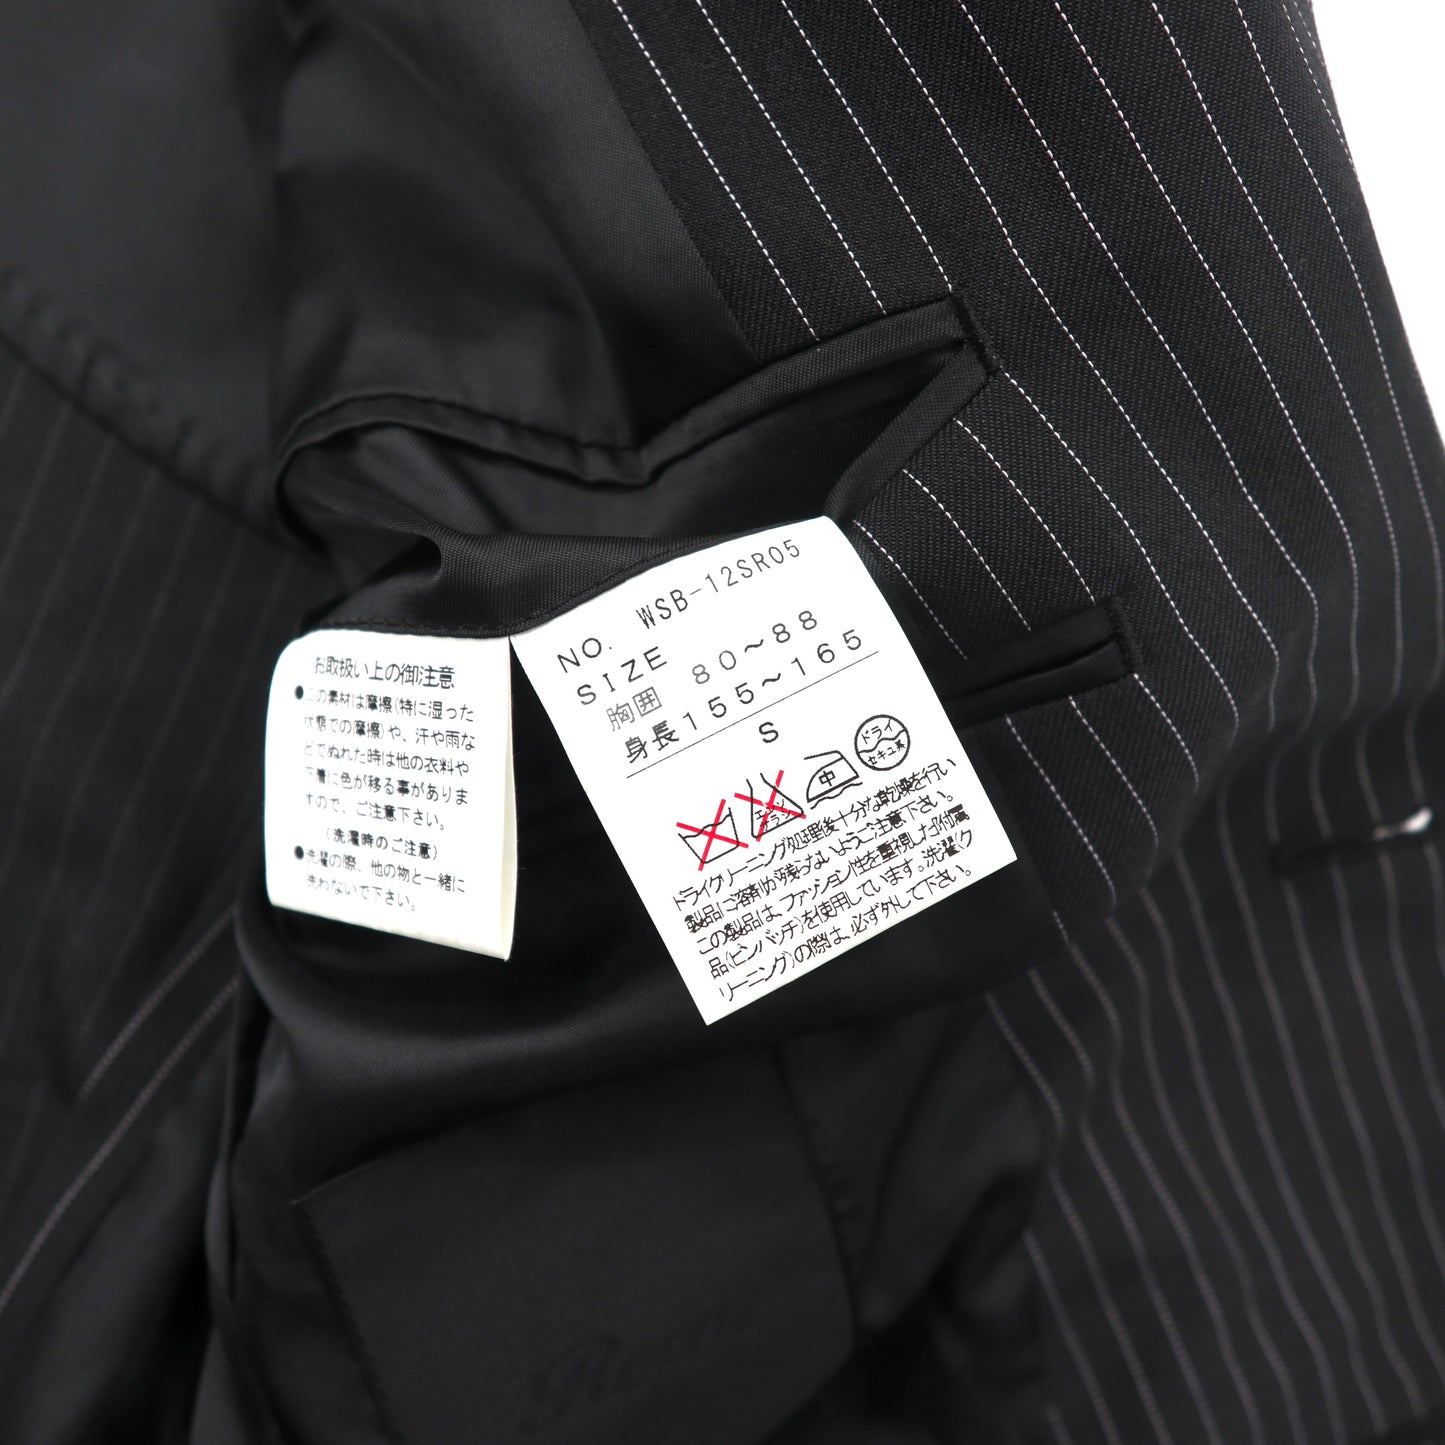 Roen × semantic design 2Bスーツ セットアップ S ブラック ストライプ ポリエステル